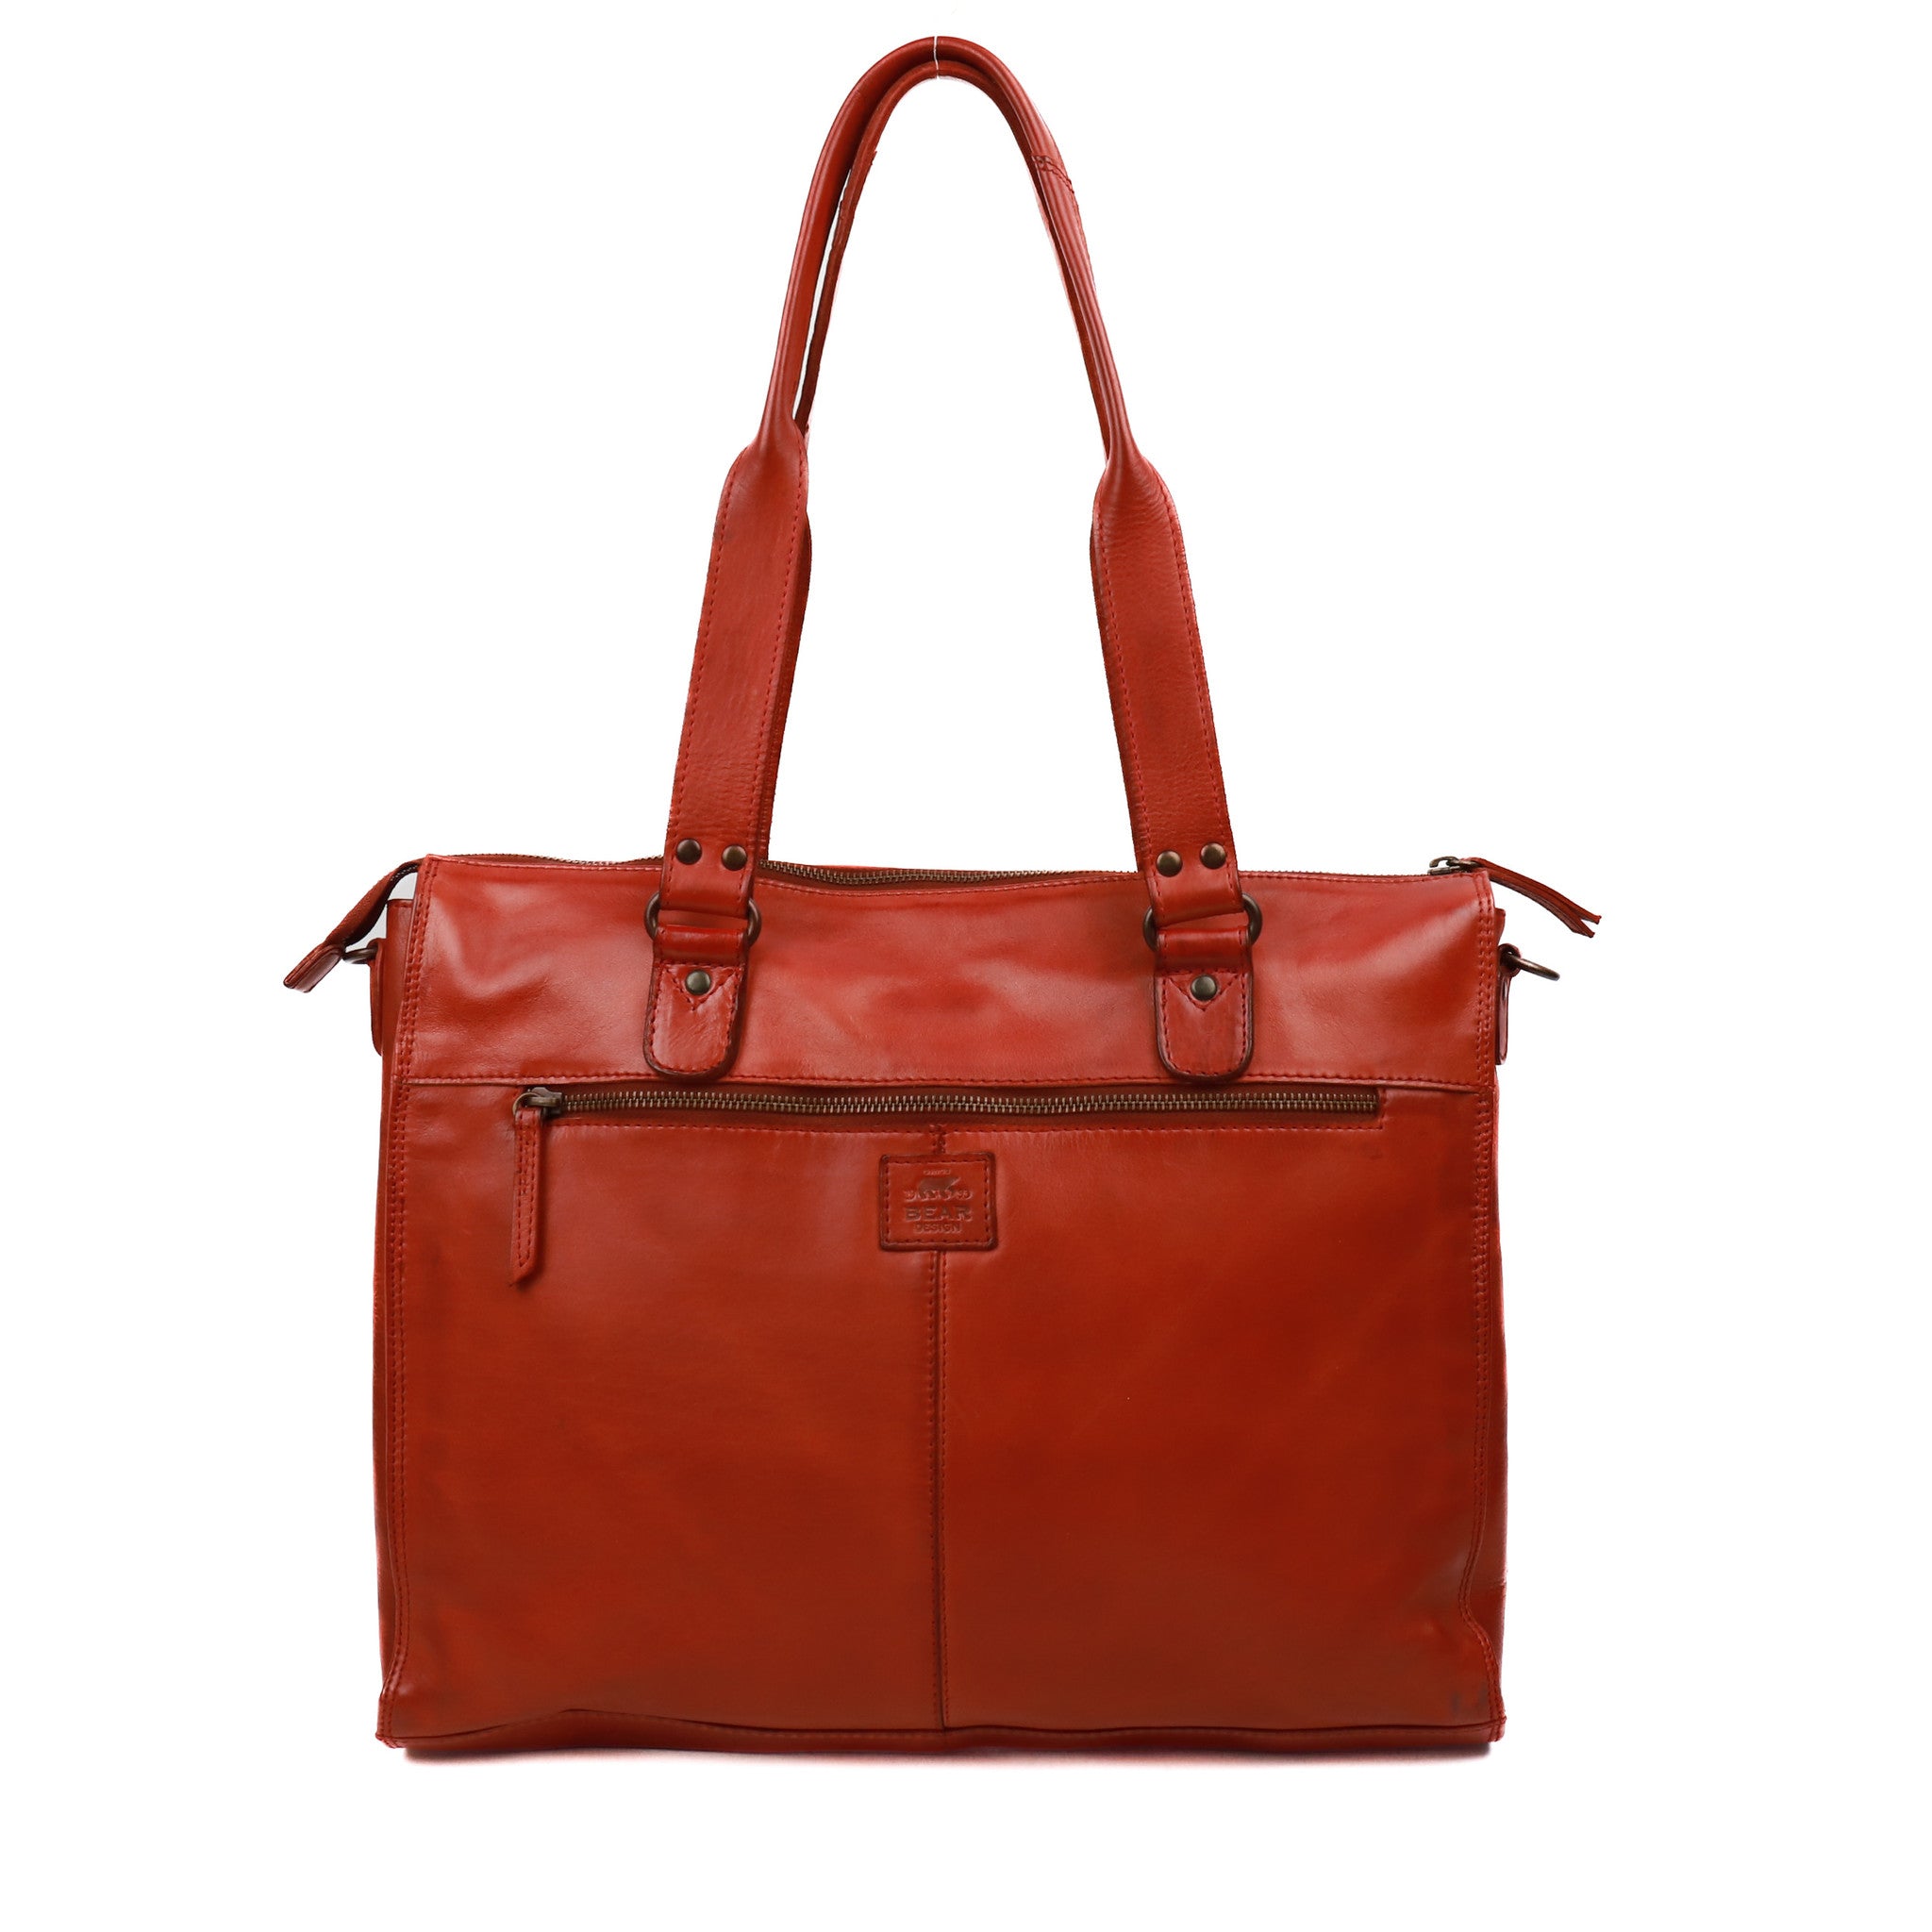 Hand/shoulder bag 'Mea' red - CL 35221